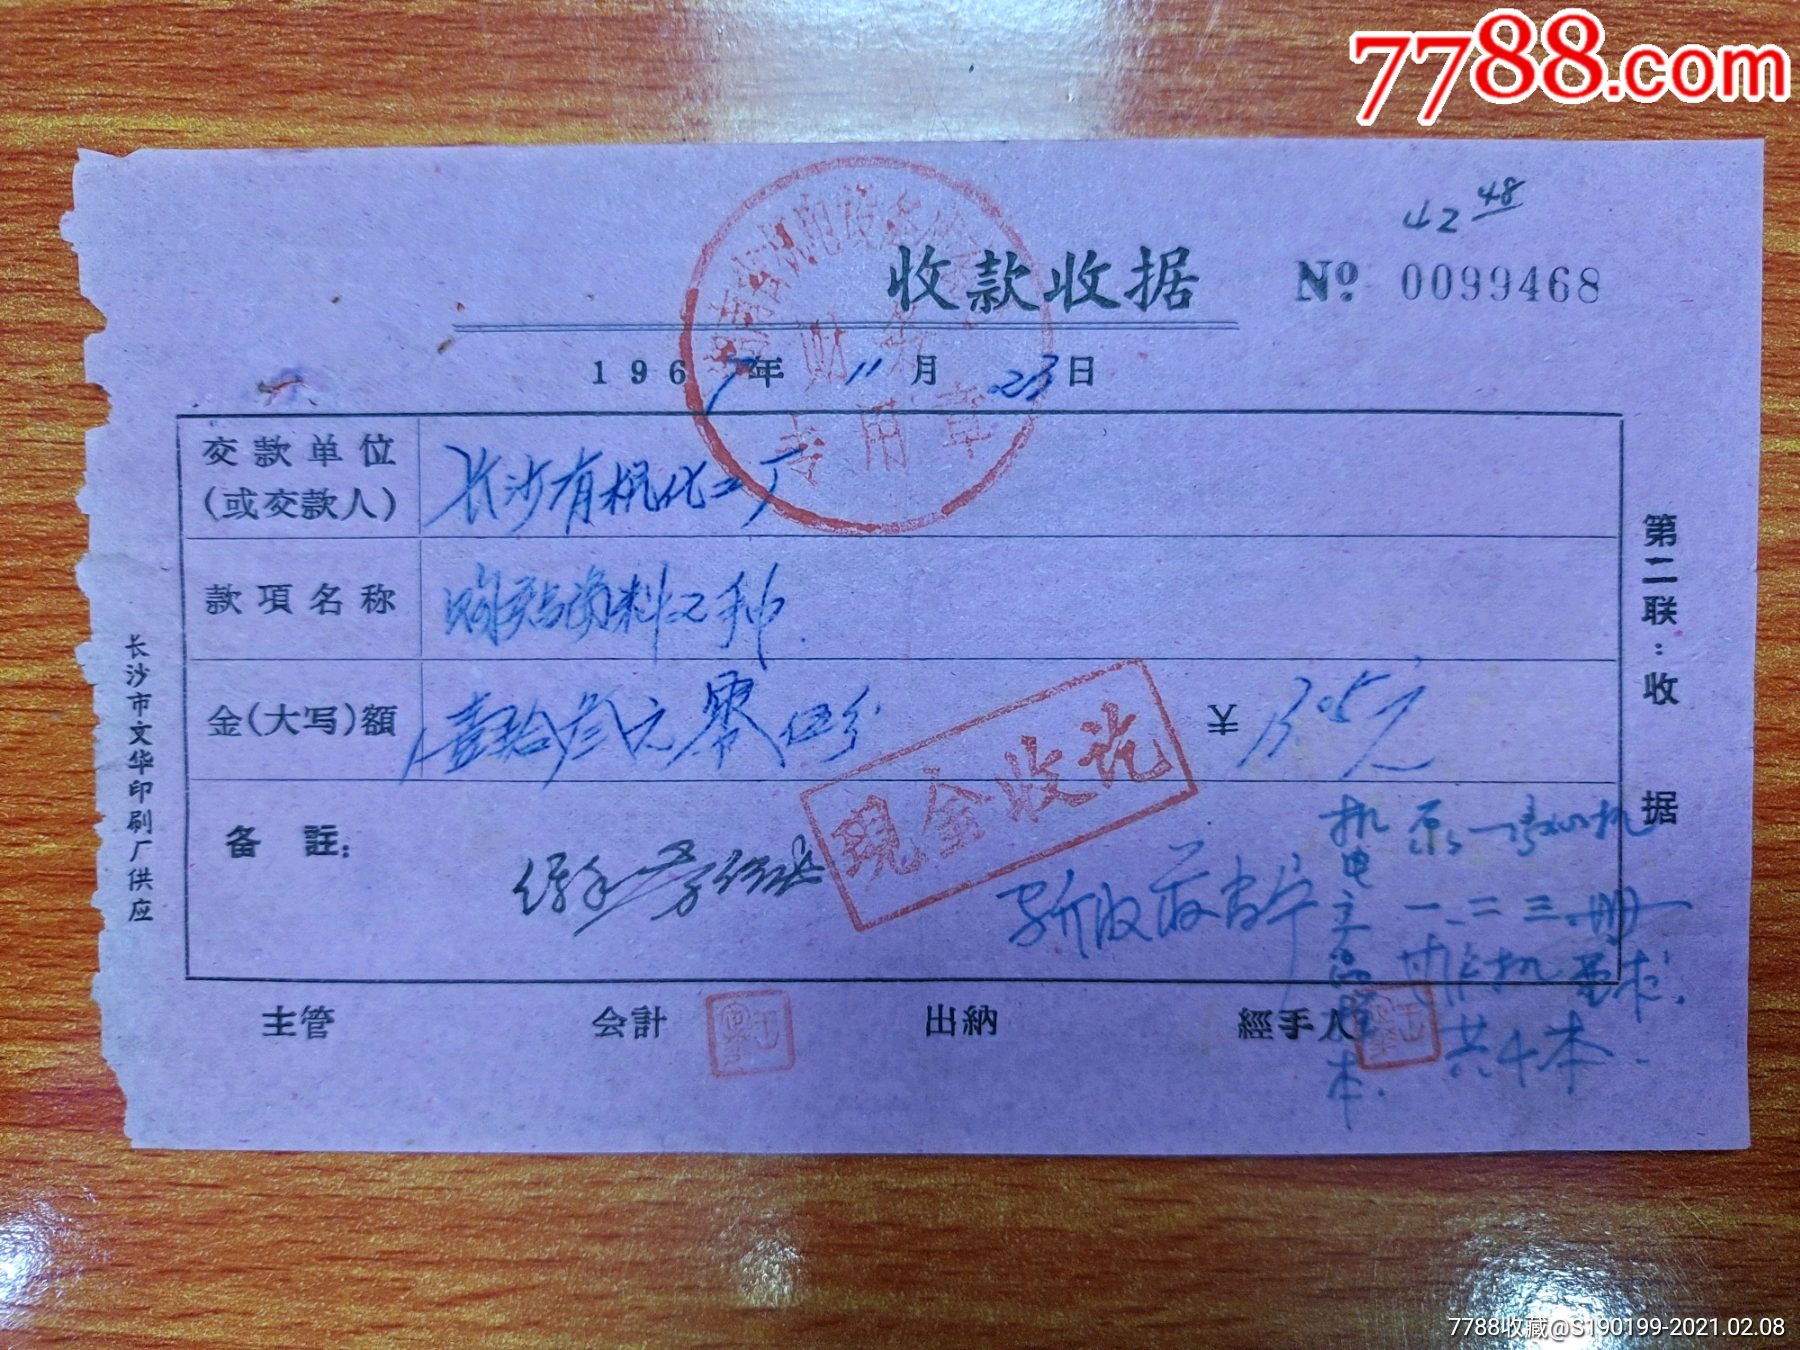 湖南省机电设备成套财务专用章收款收据购产品资料2种